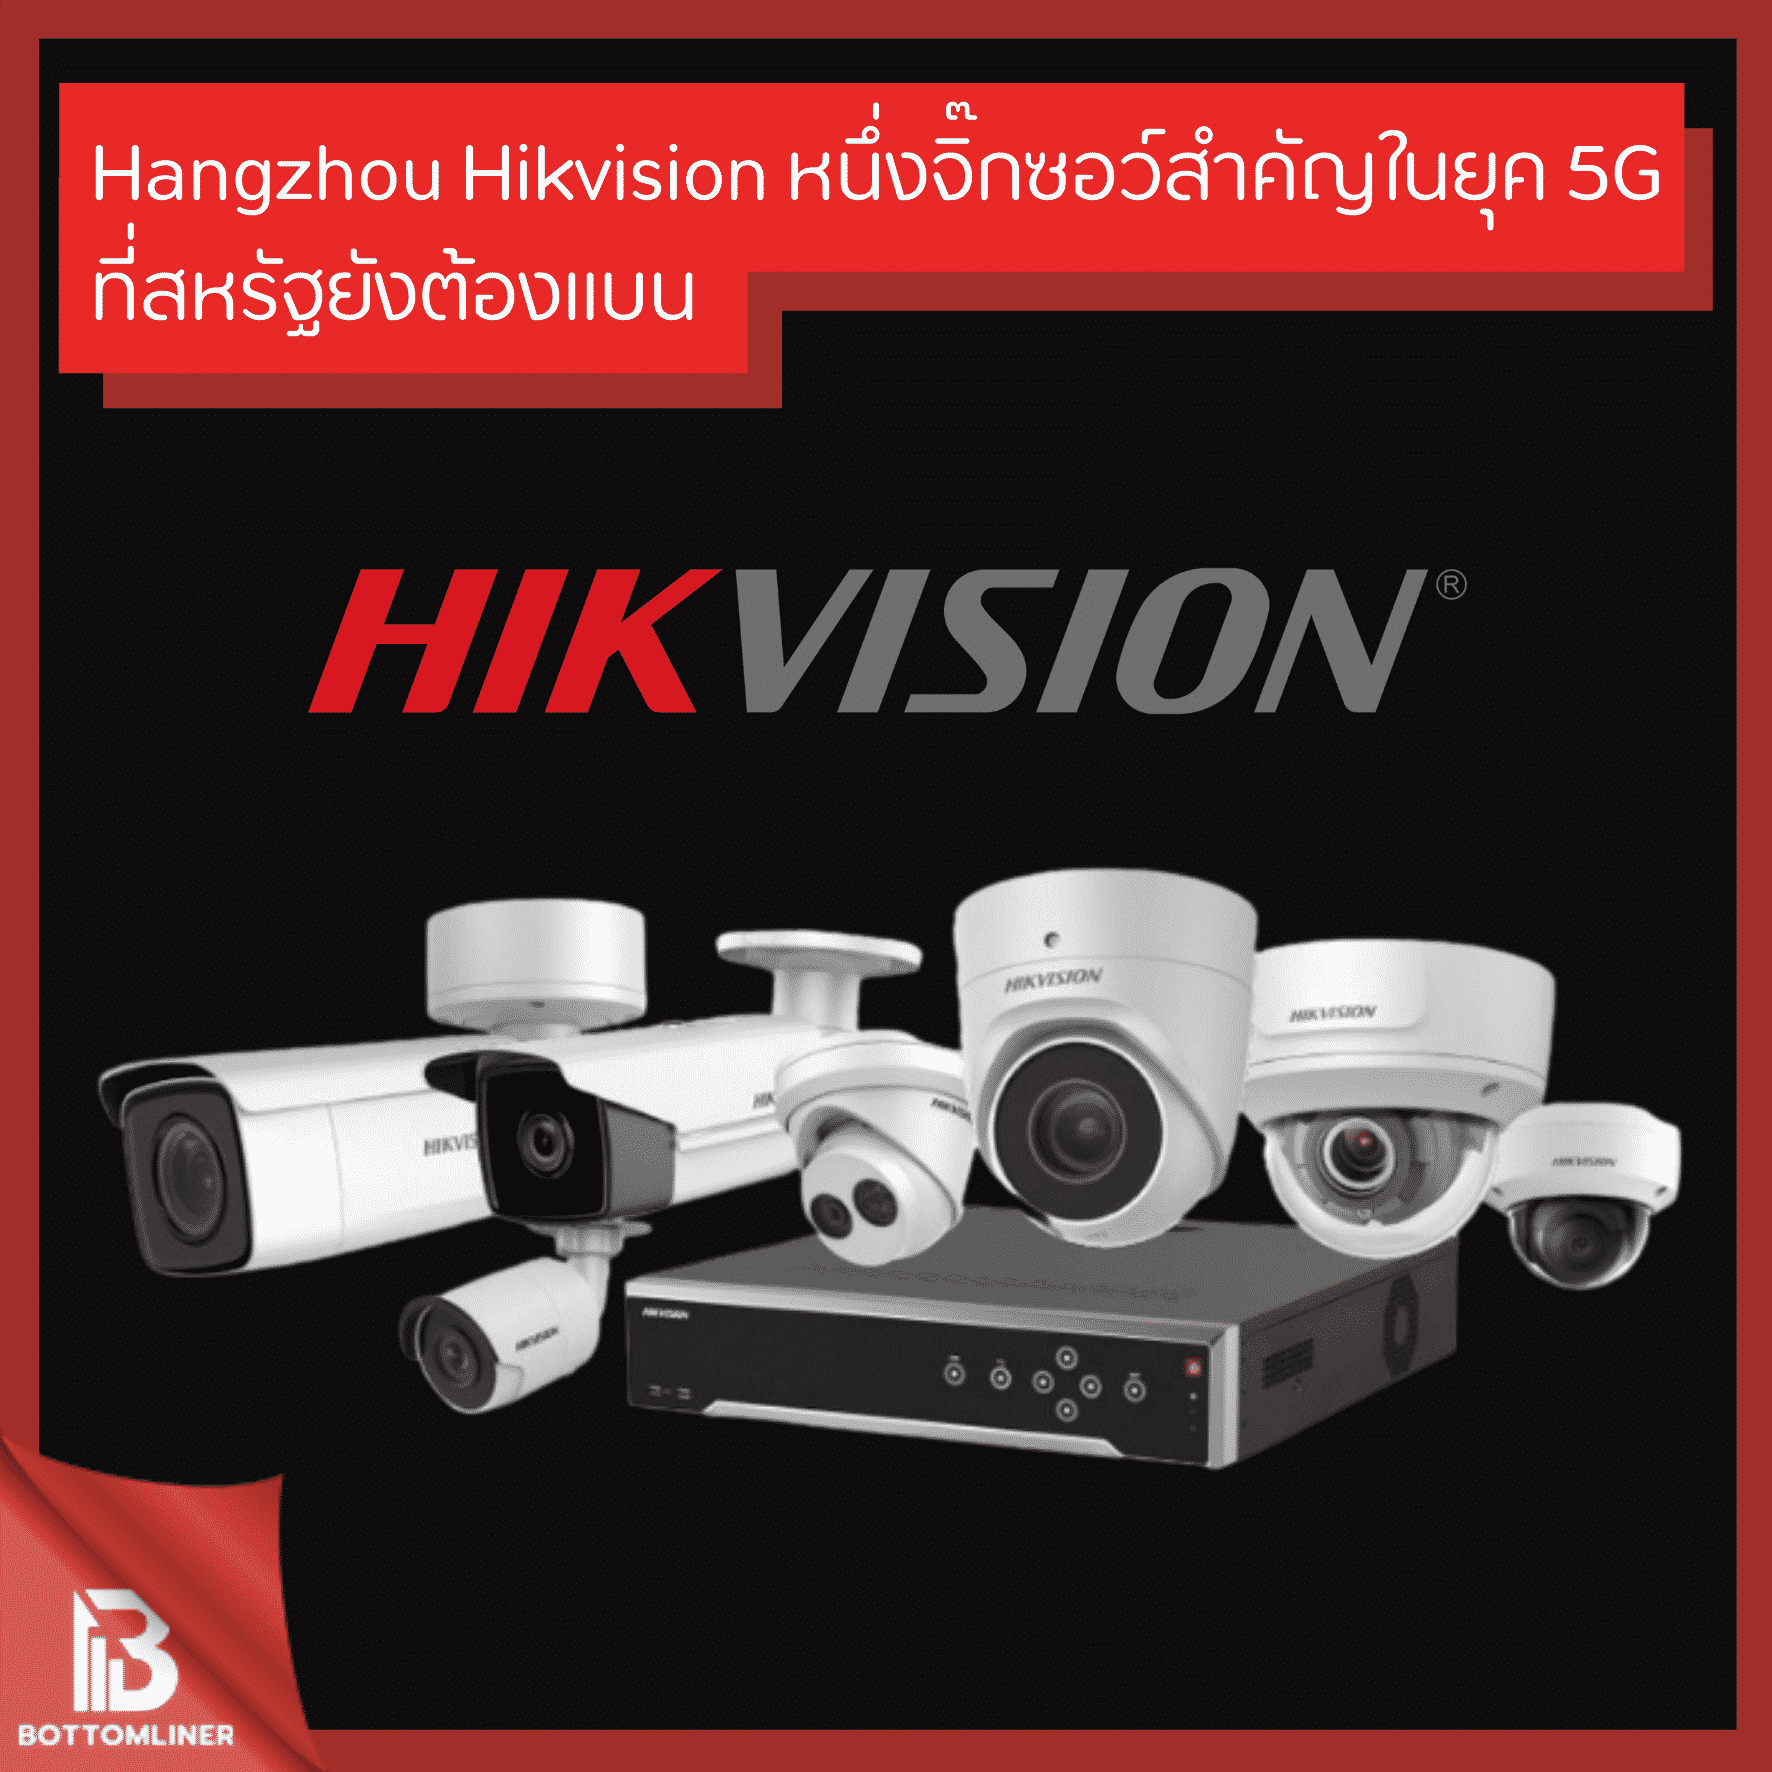 Hangzhou Hikvision หนึ่งจิ๊กซอว์สำคัญในยุคของ 5G ที่สหรัฐยังต้องแบน